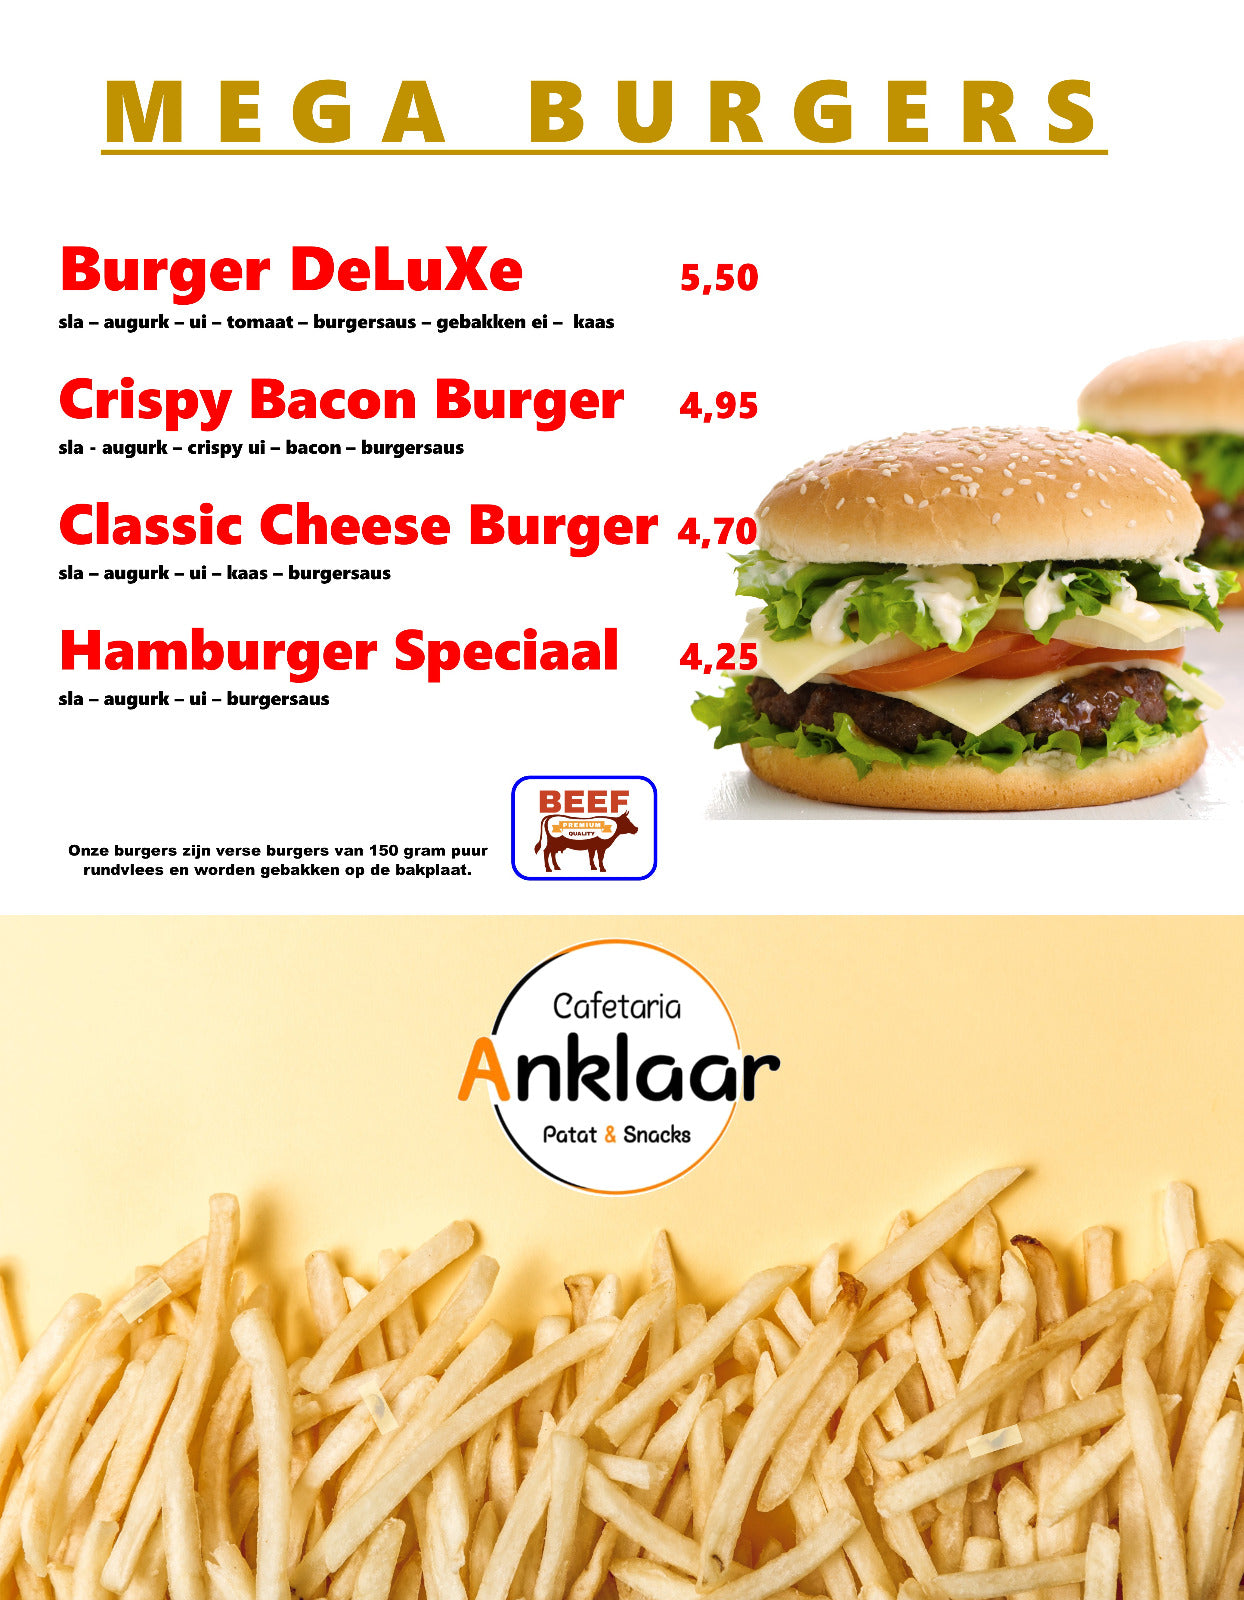 Megaburgers | Cafetaria Anklaar